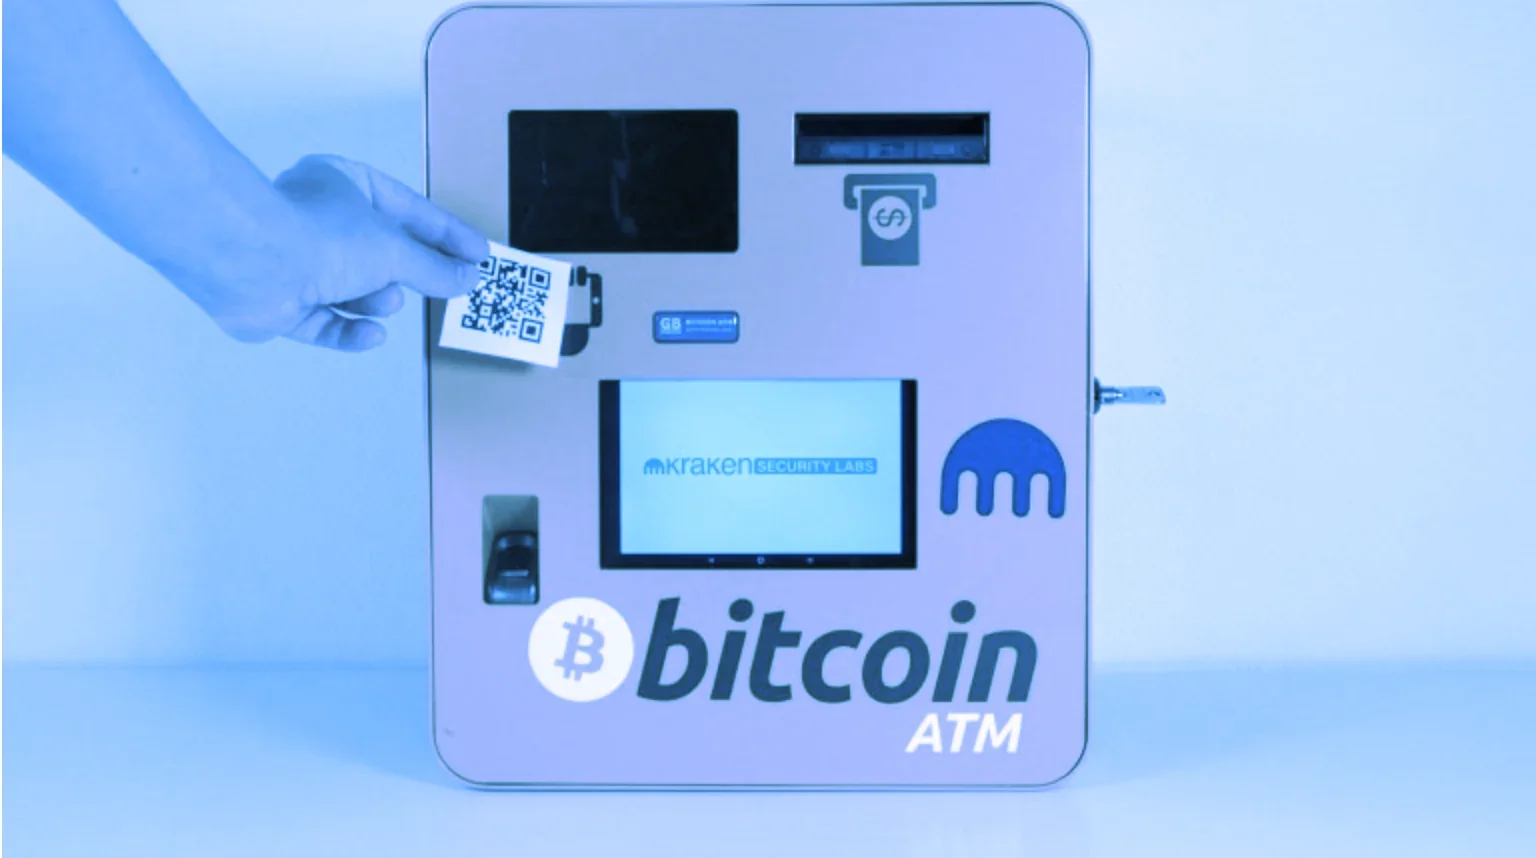 Bitcoin ATM. Image: Kraken